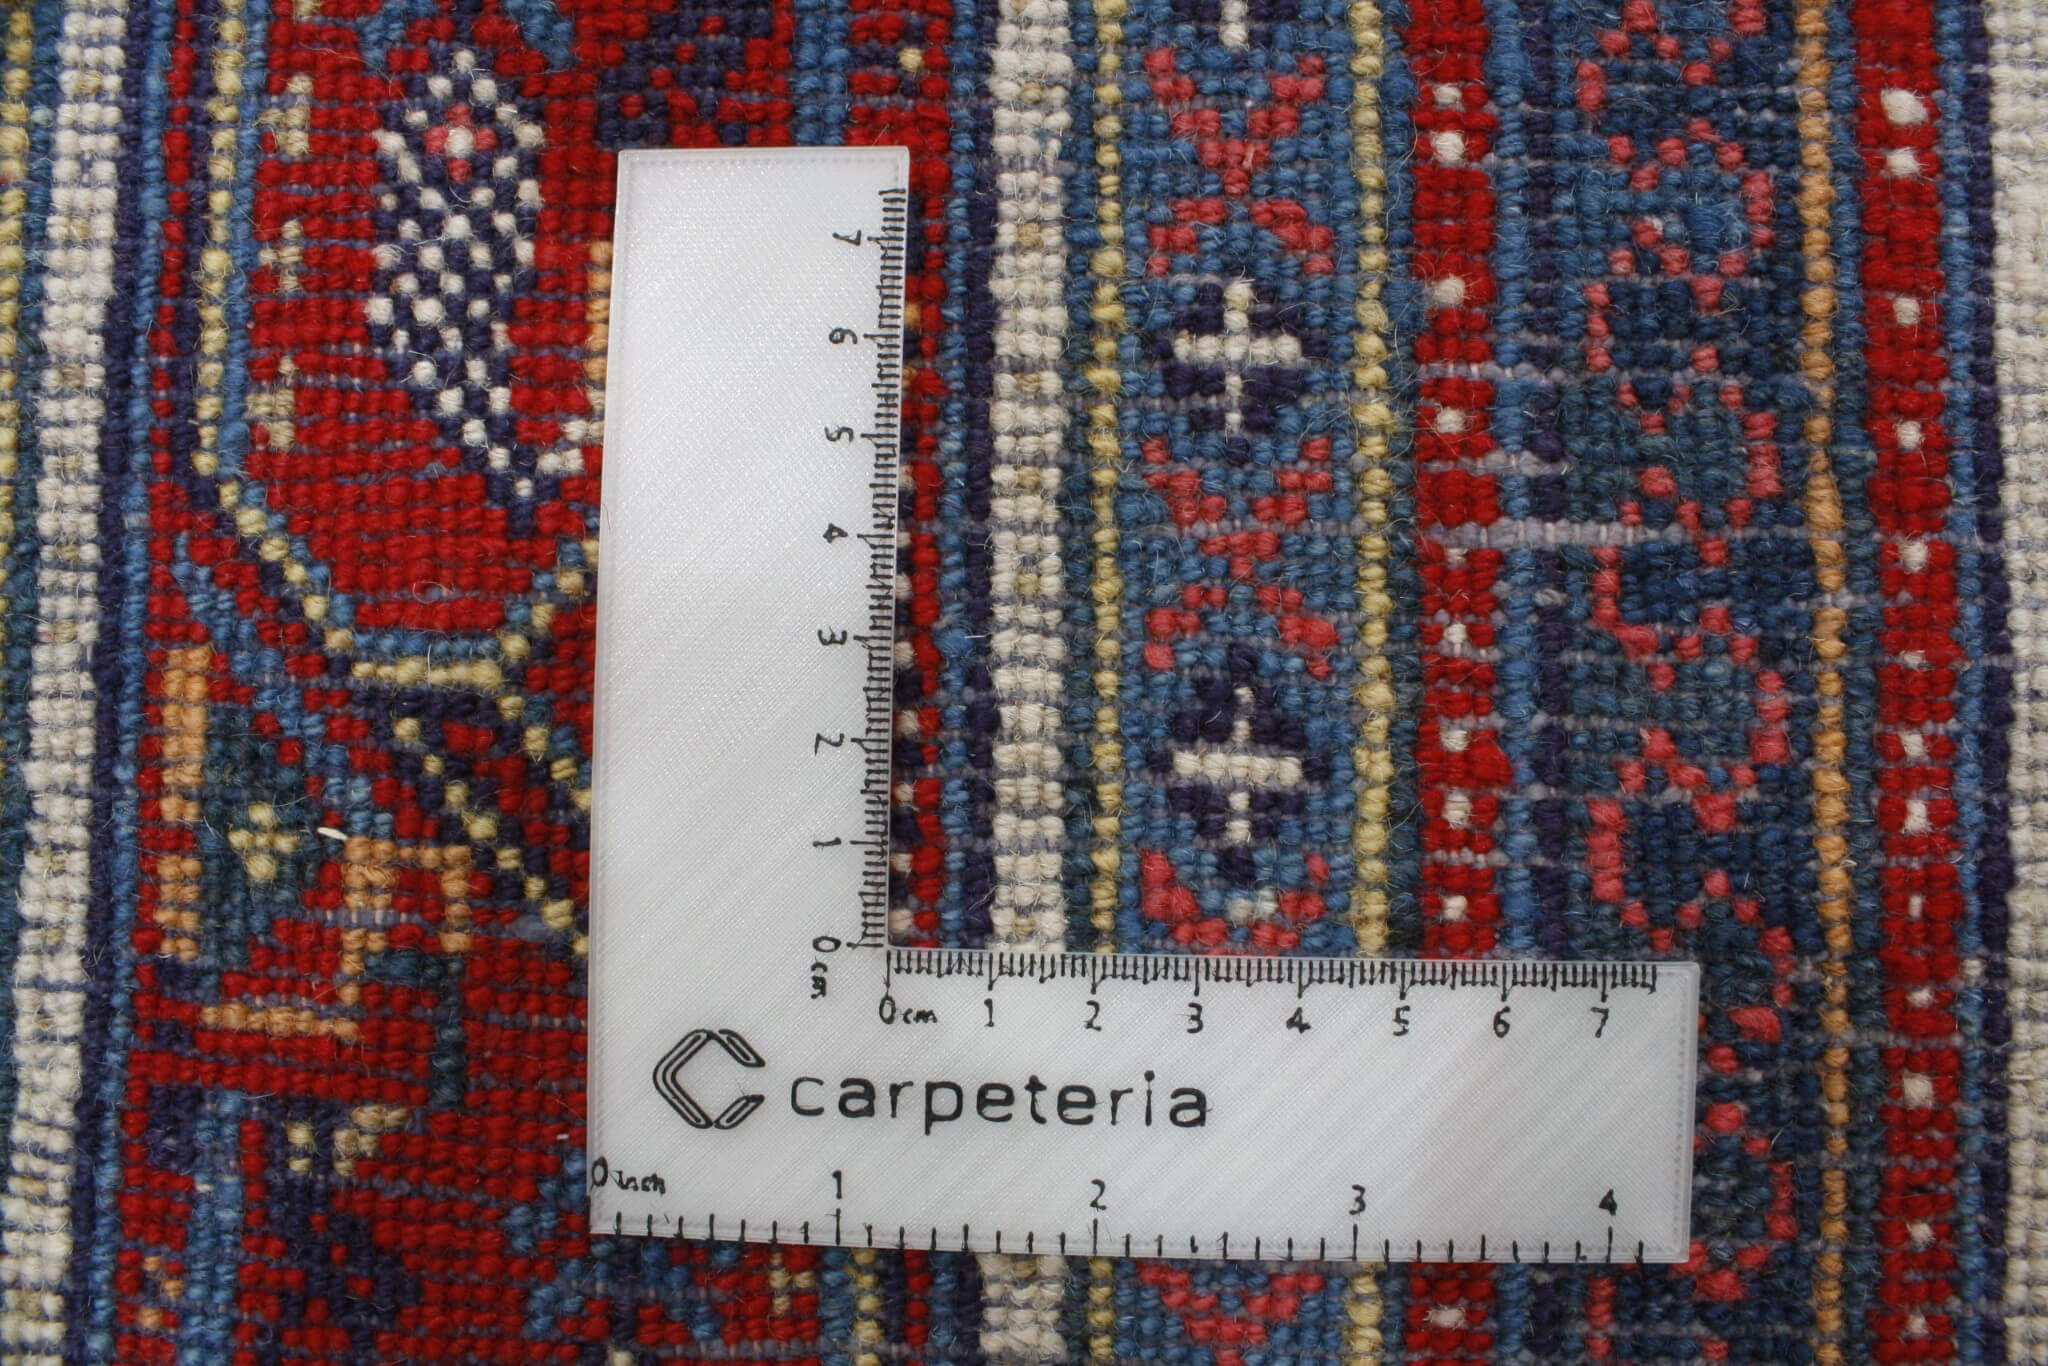 Persian rug Sarough